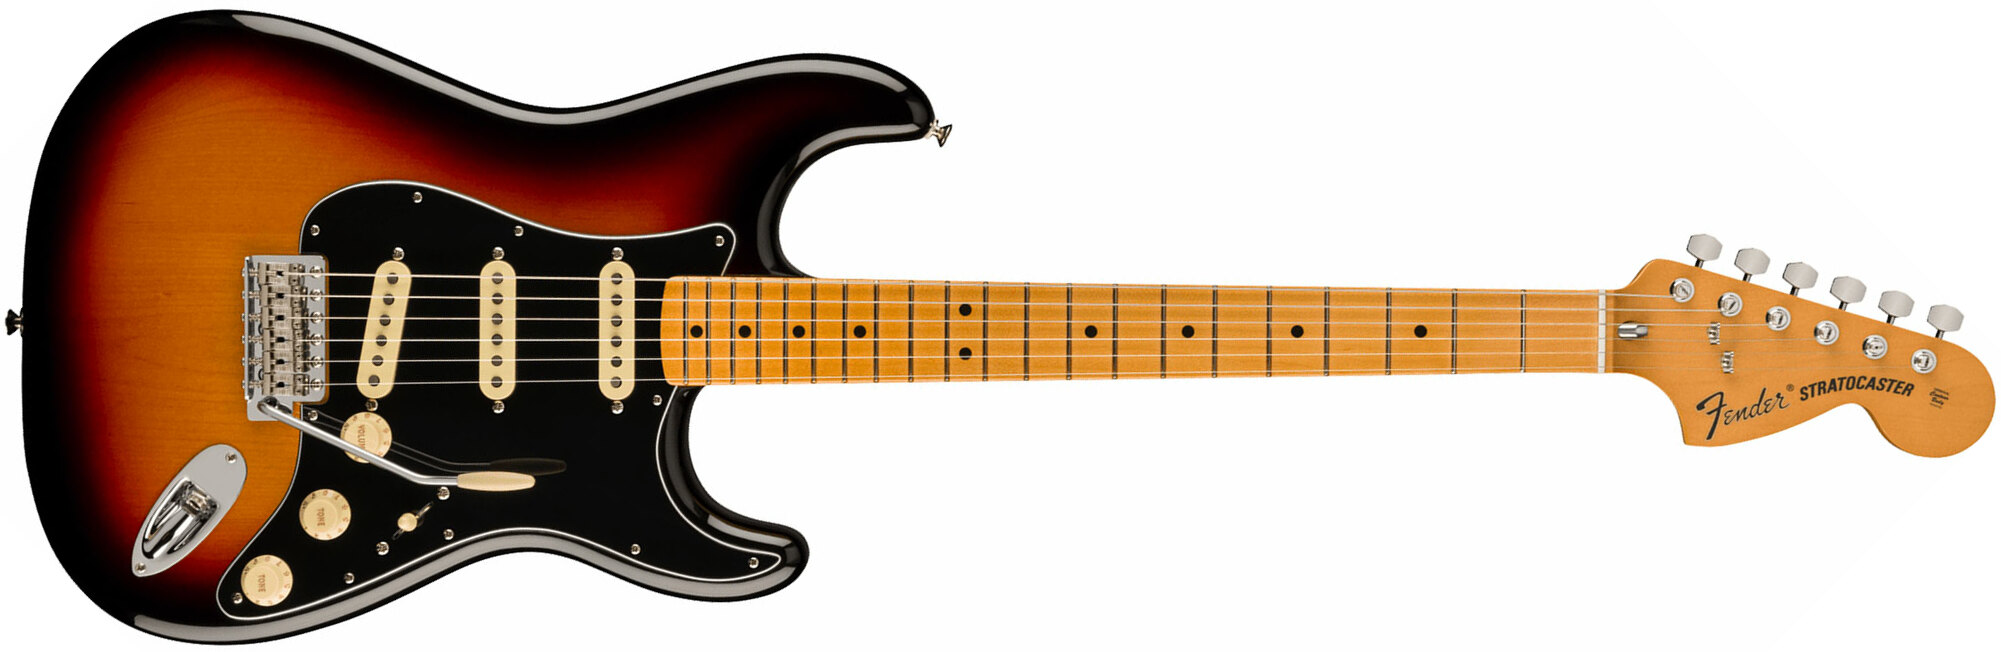 Fender Strat 70s Vintera 2 Mex 3s Trem Mn - 3-color Sunburst - Str shape electric guitar - Main picture